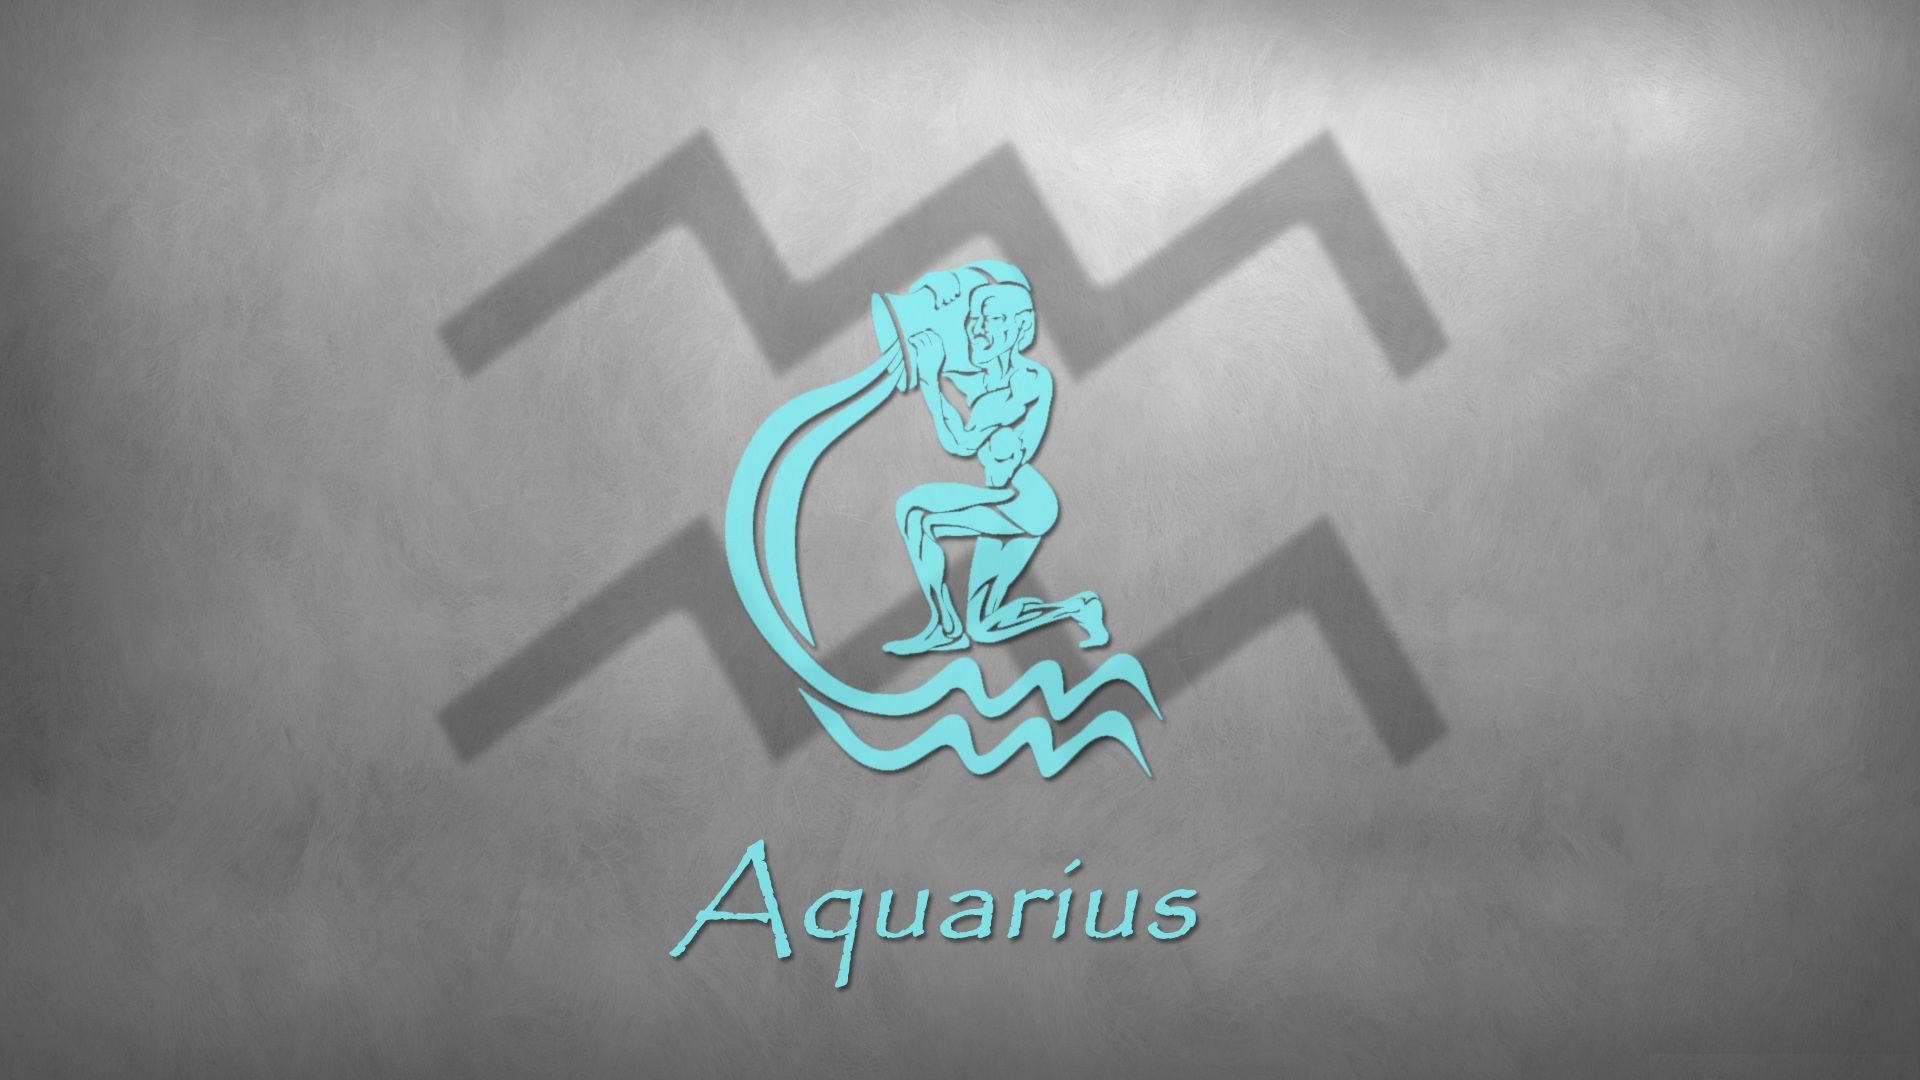 Aquarius Background. Lucy Heartfilia Aquarius Form Wallpaper, Aquarius Zodiac Sign Wallpaper and Aquarius Constellation Wallpaper